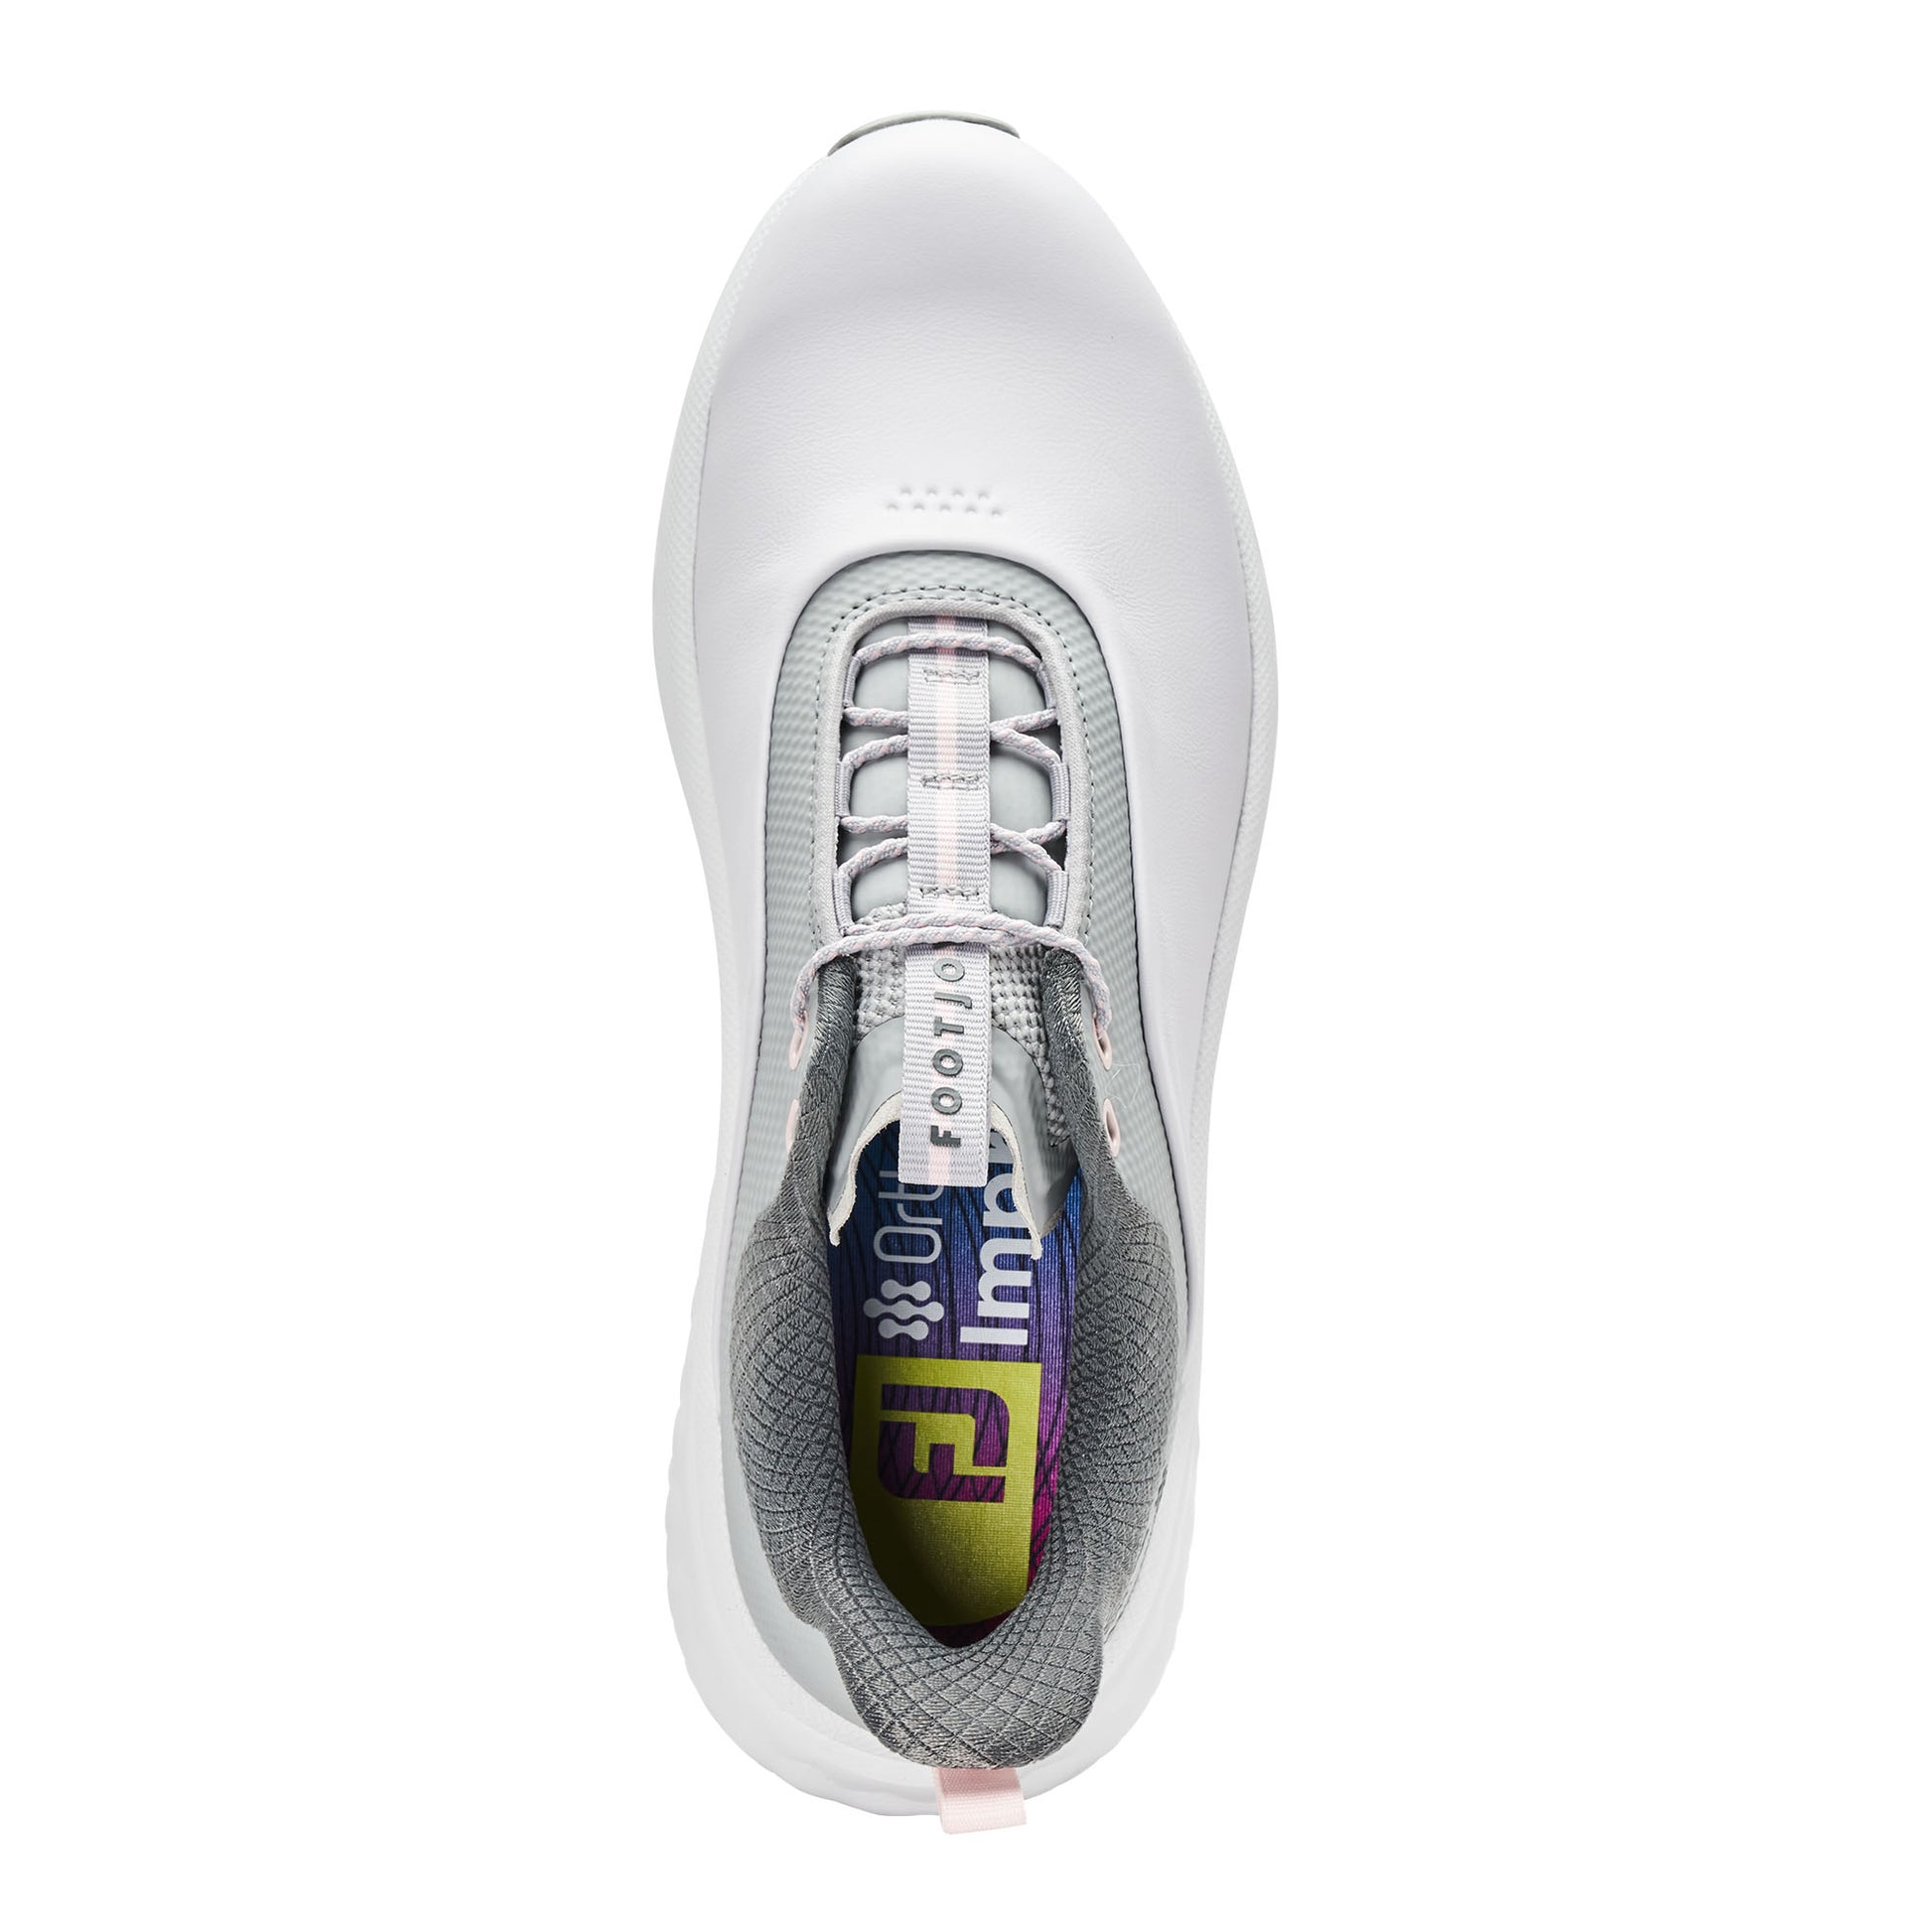 FootJoy Ladies Waterproof Quantum Golf Shoes in White, Grey & Pink